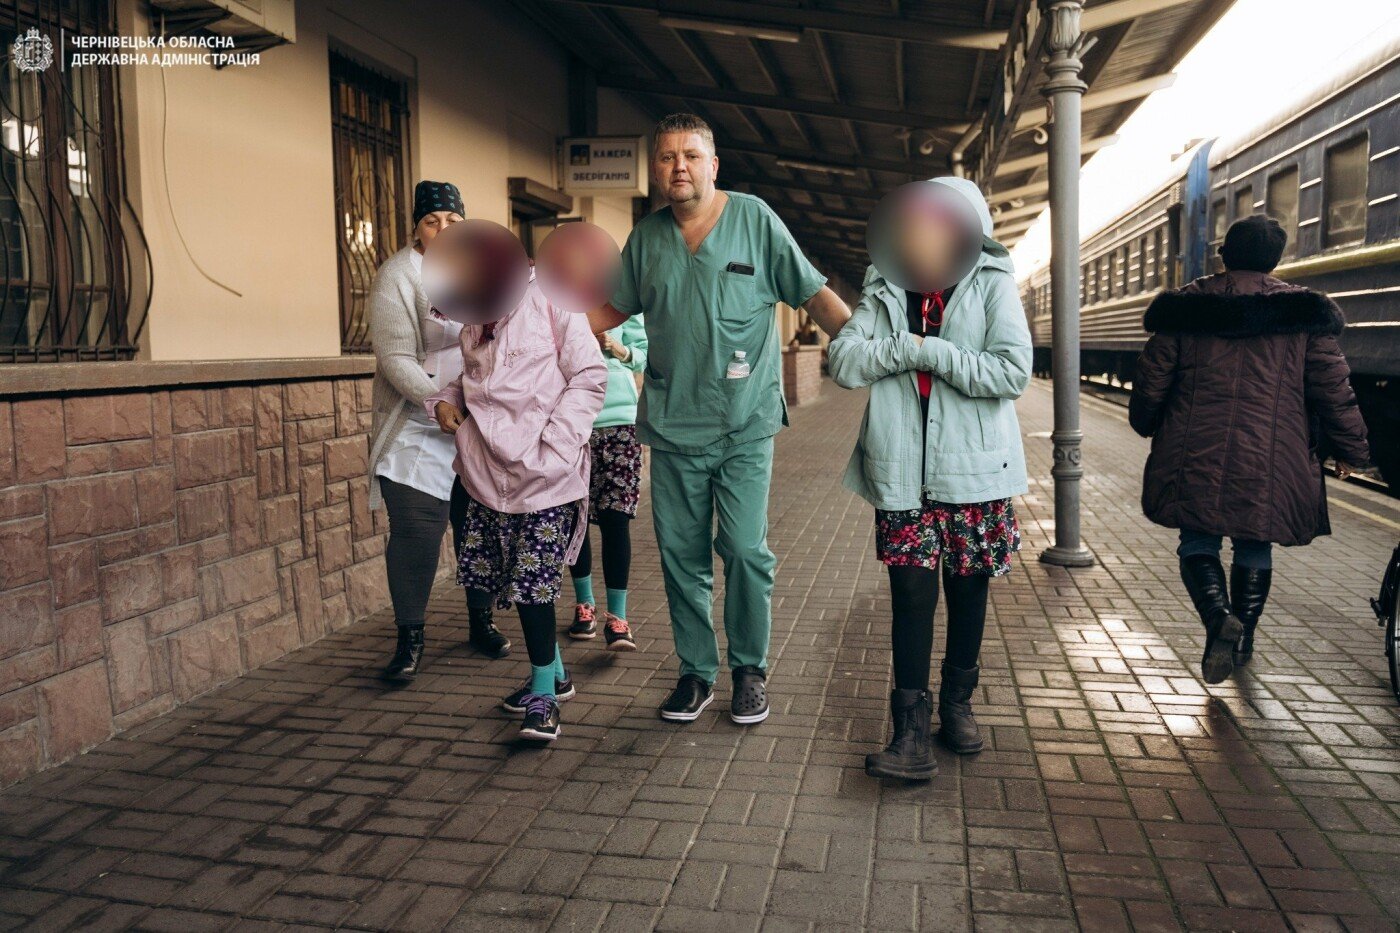 Дорога життя у реанімаційному вагоні - як на Буковину евакуюють українців медичним потягом